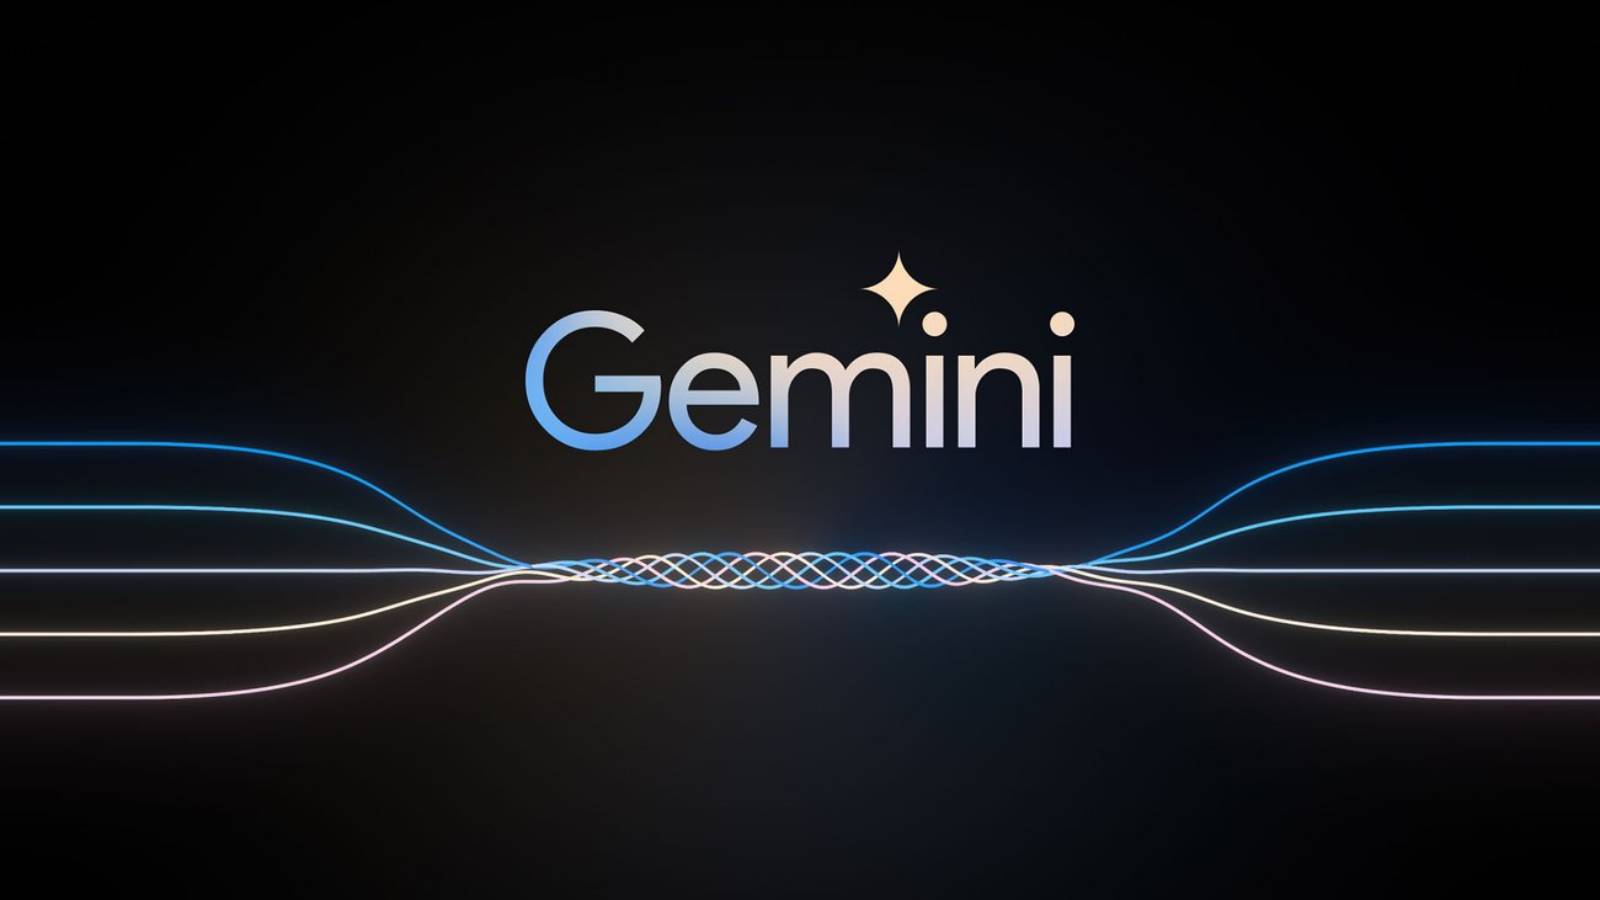 Google hat große Änderungen an der künstlichen Intelligenz von Android Gemini vorgenommen